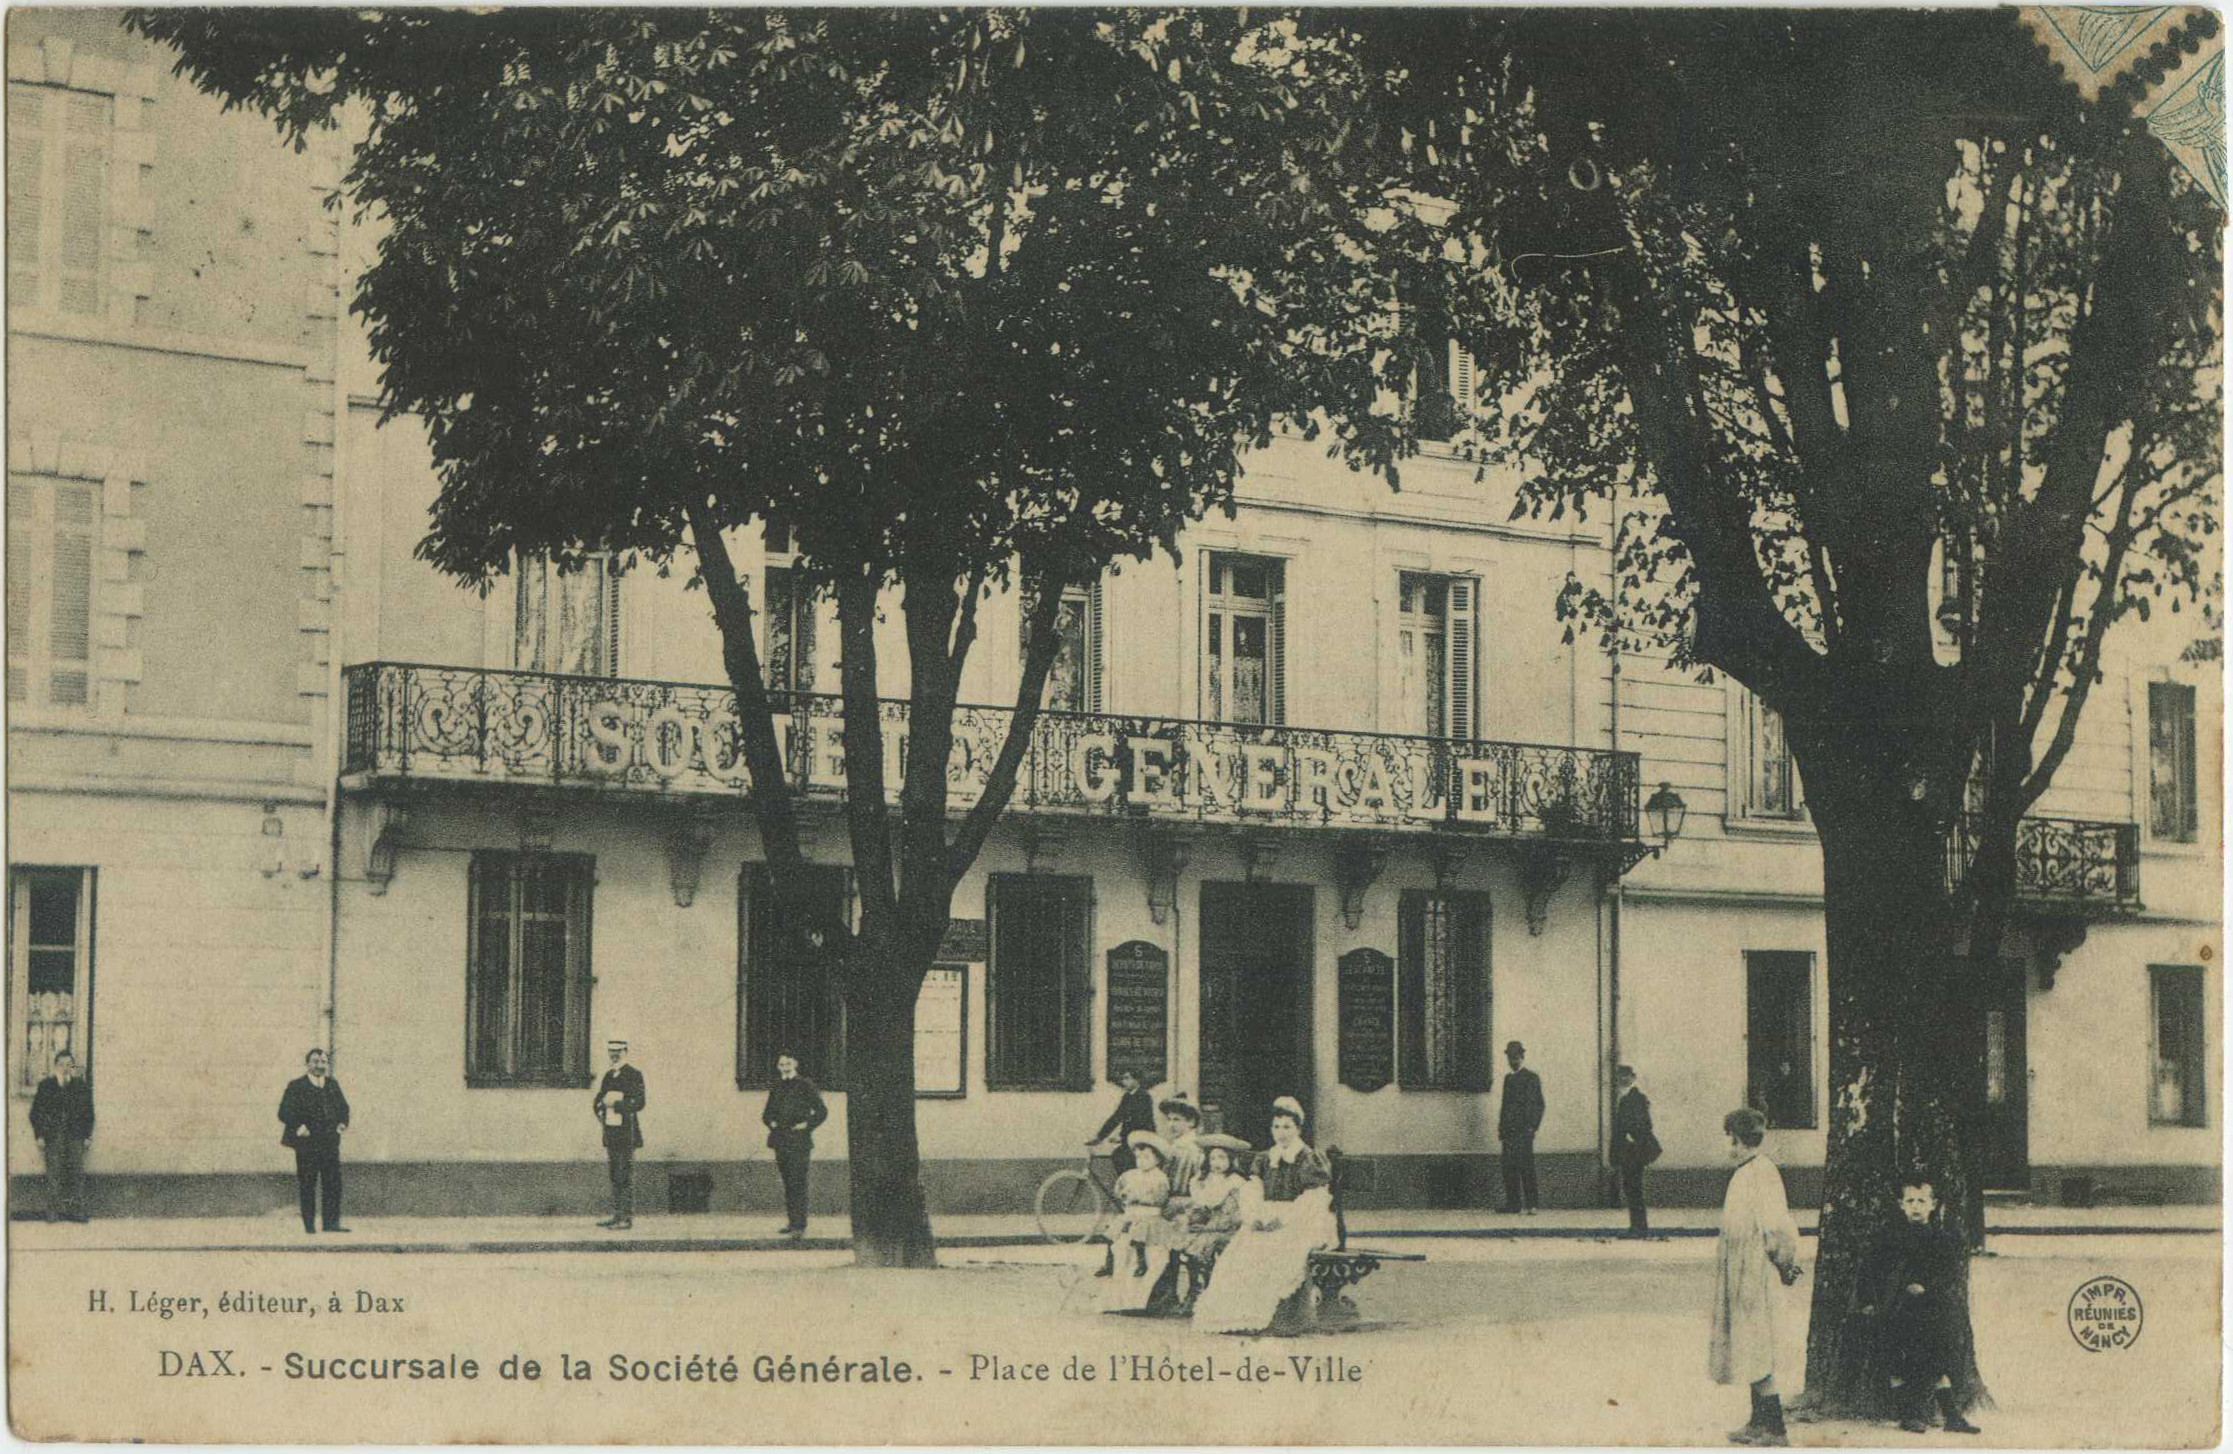 Dax - Succursale de la Société Générale. - Place de l'Hôtel-de-Ville